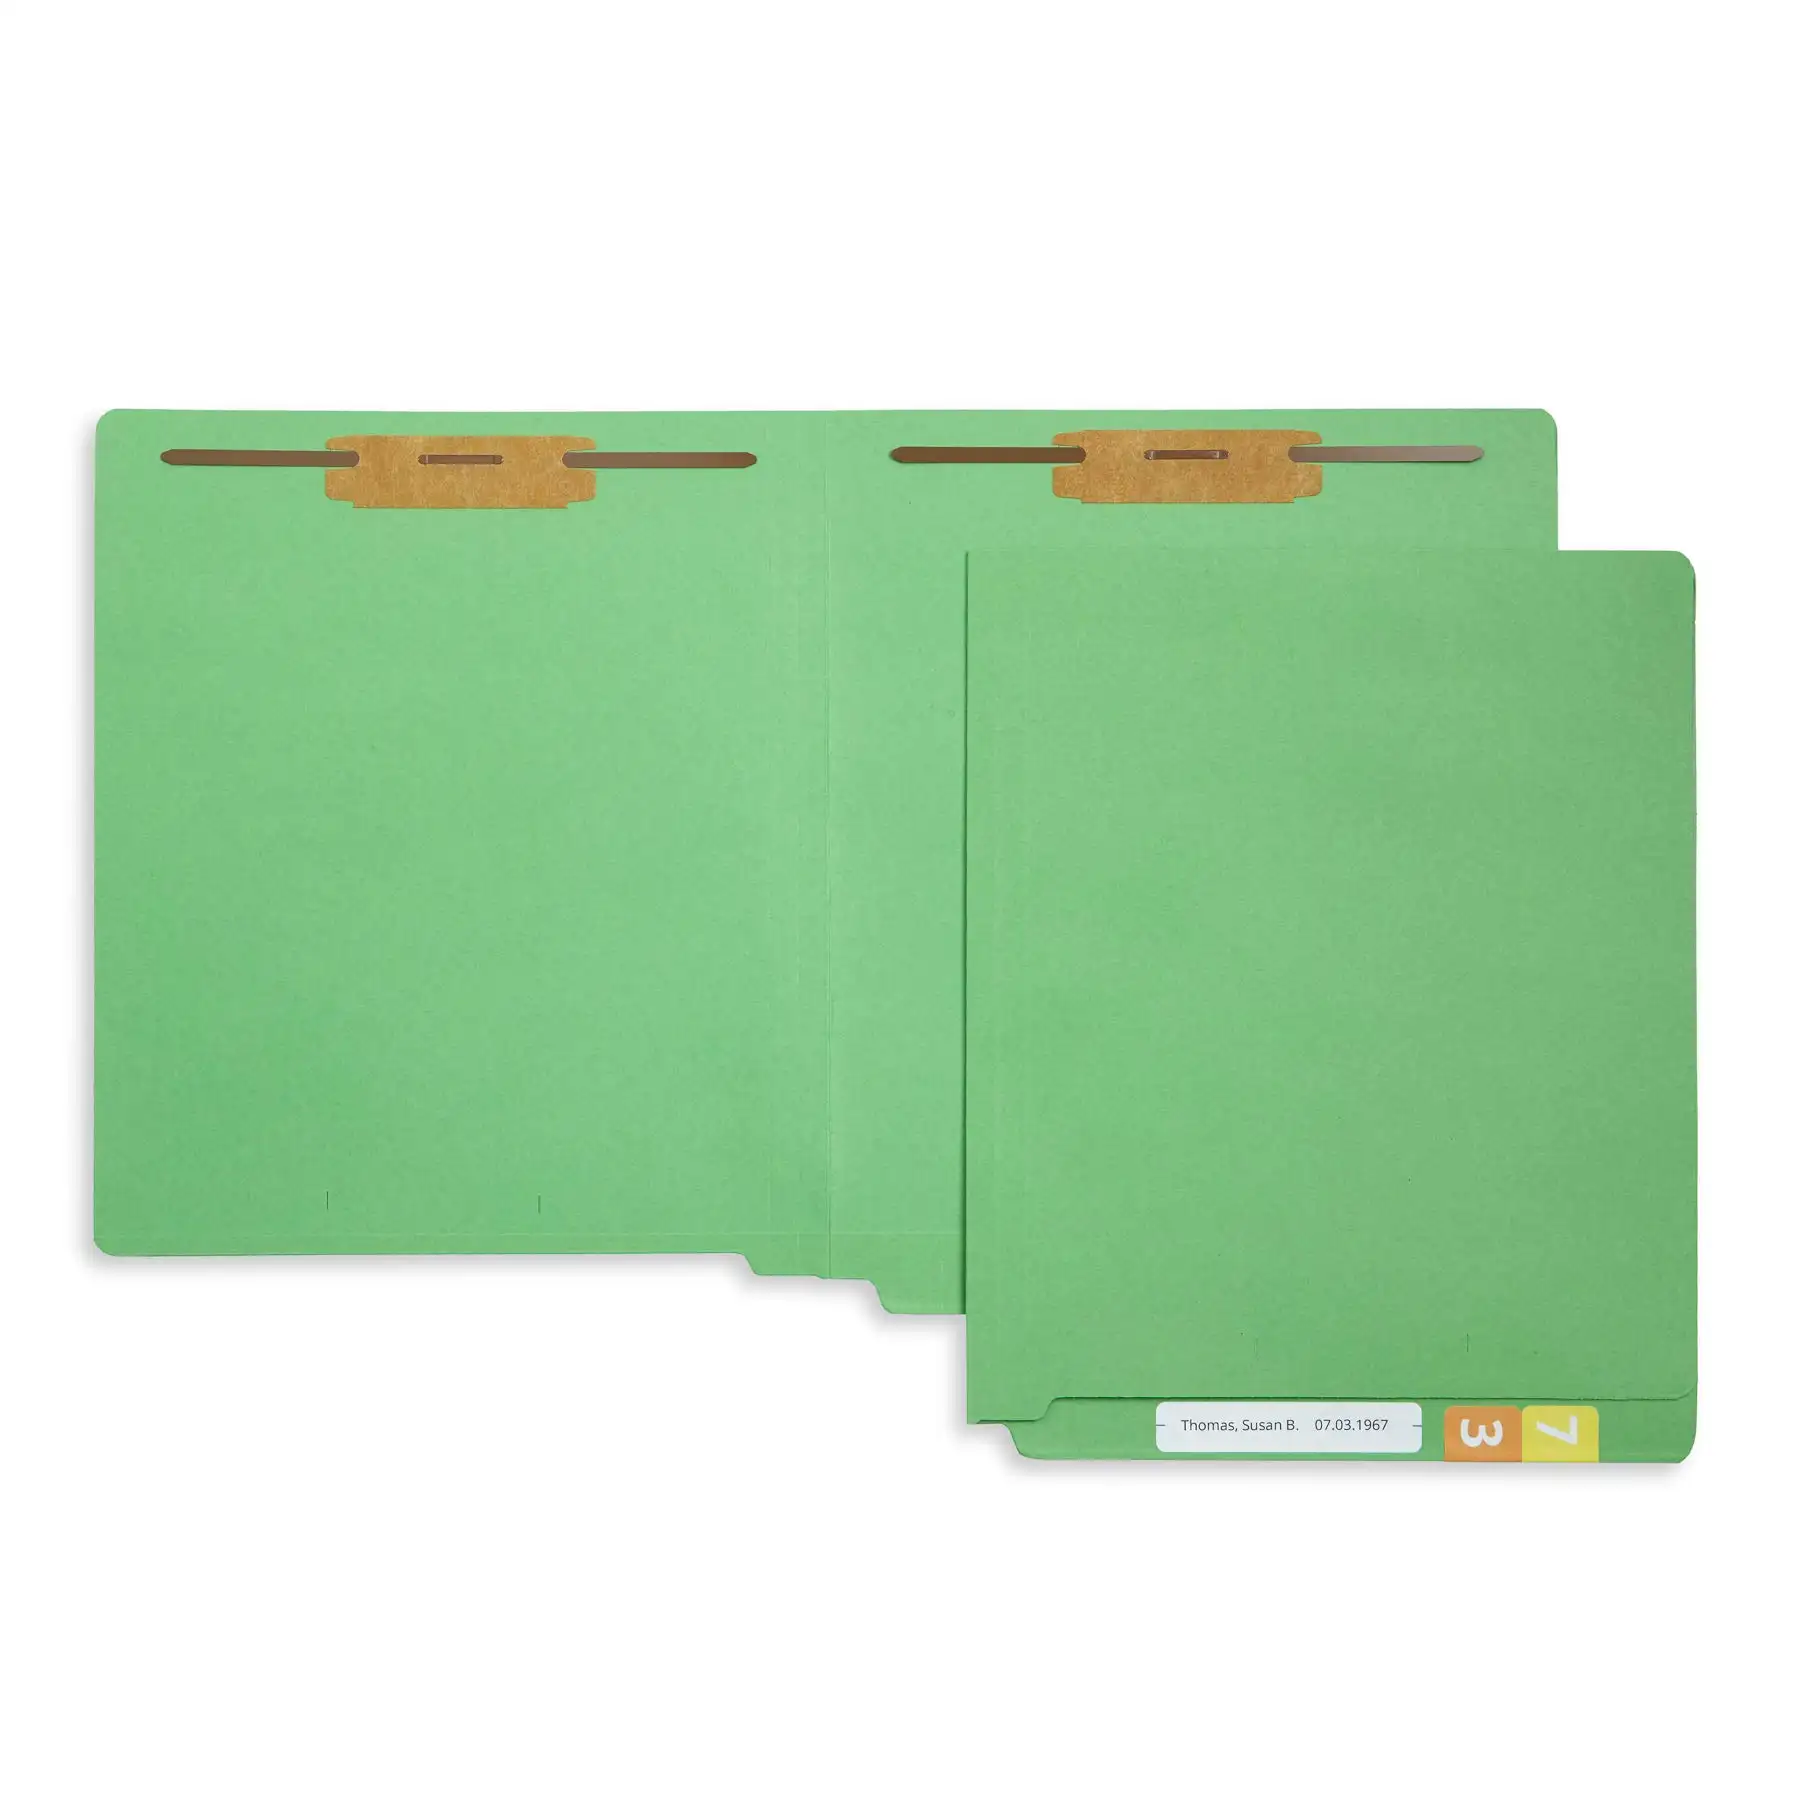 표준 의료 파일을 구성하도록 설계된 내구성 2 갈래 문자 크기 회색 녹색 분류 폴더